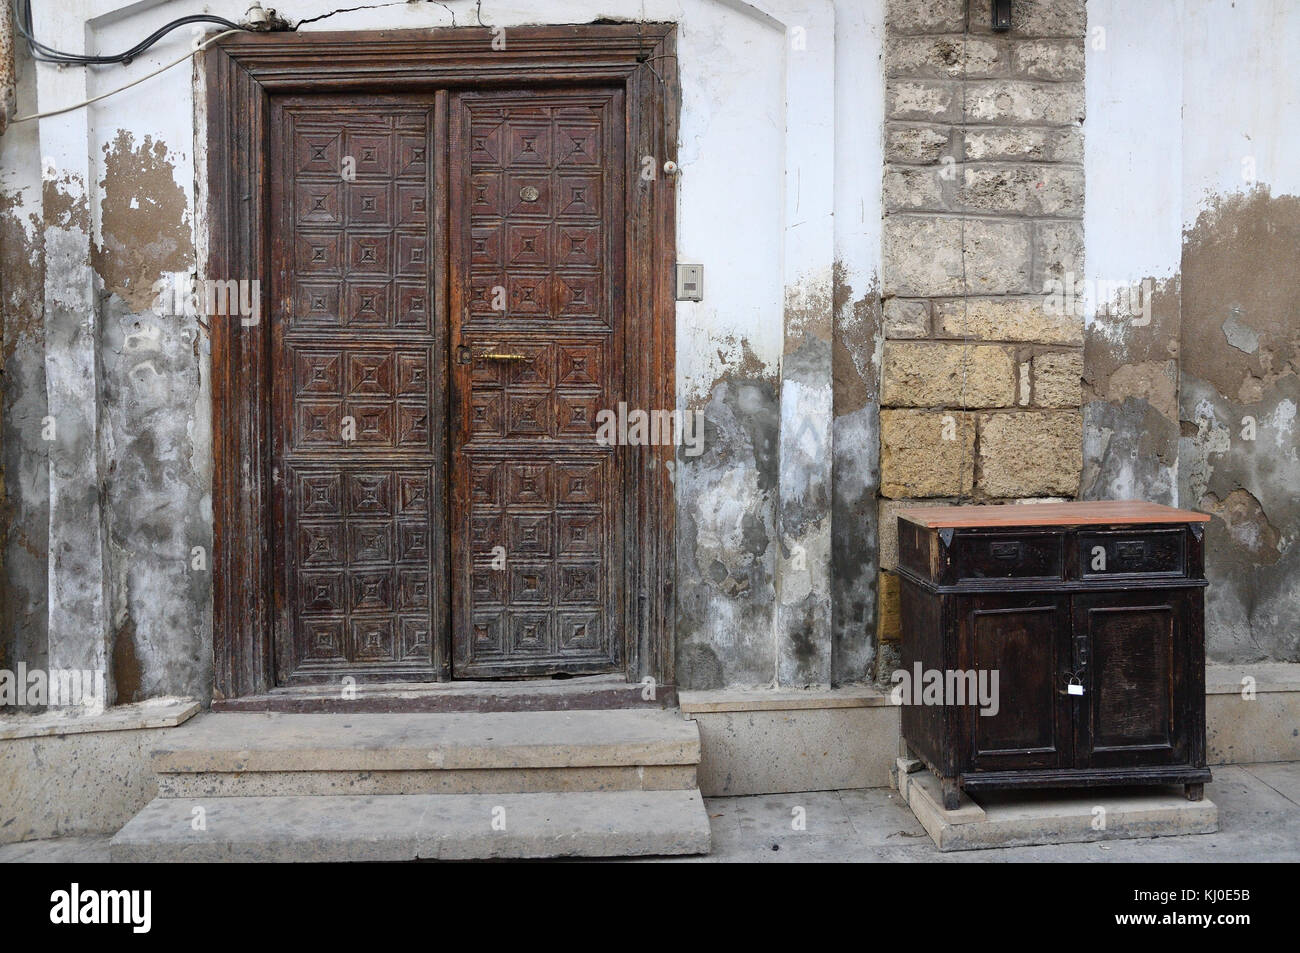 La porta è realizzata in stile antico, con motivi scolpiti e un manico di bronzo. L'armadietto è dello stesso stile e con un ferro da stiro lock.stile grunge Foto Stock